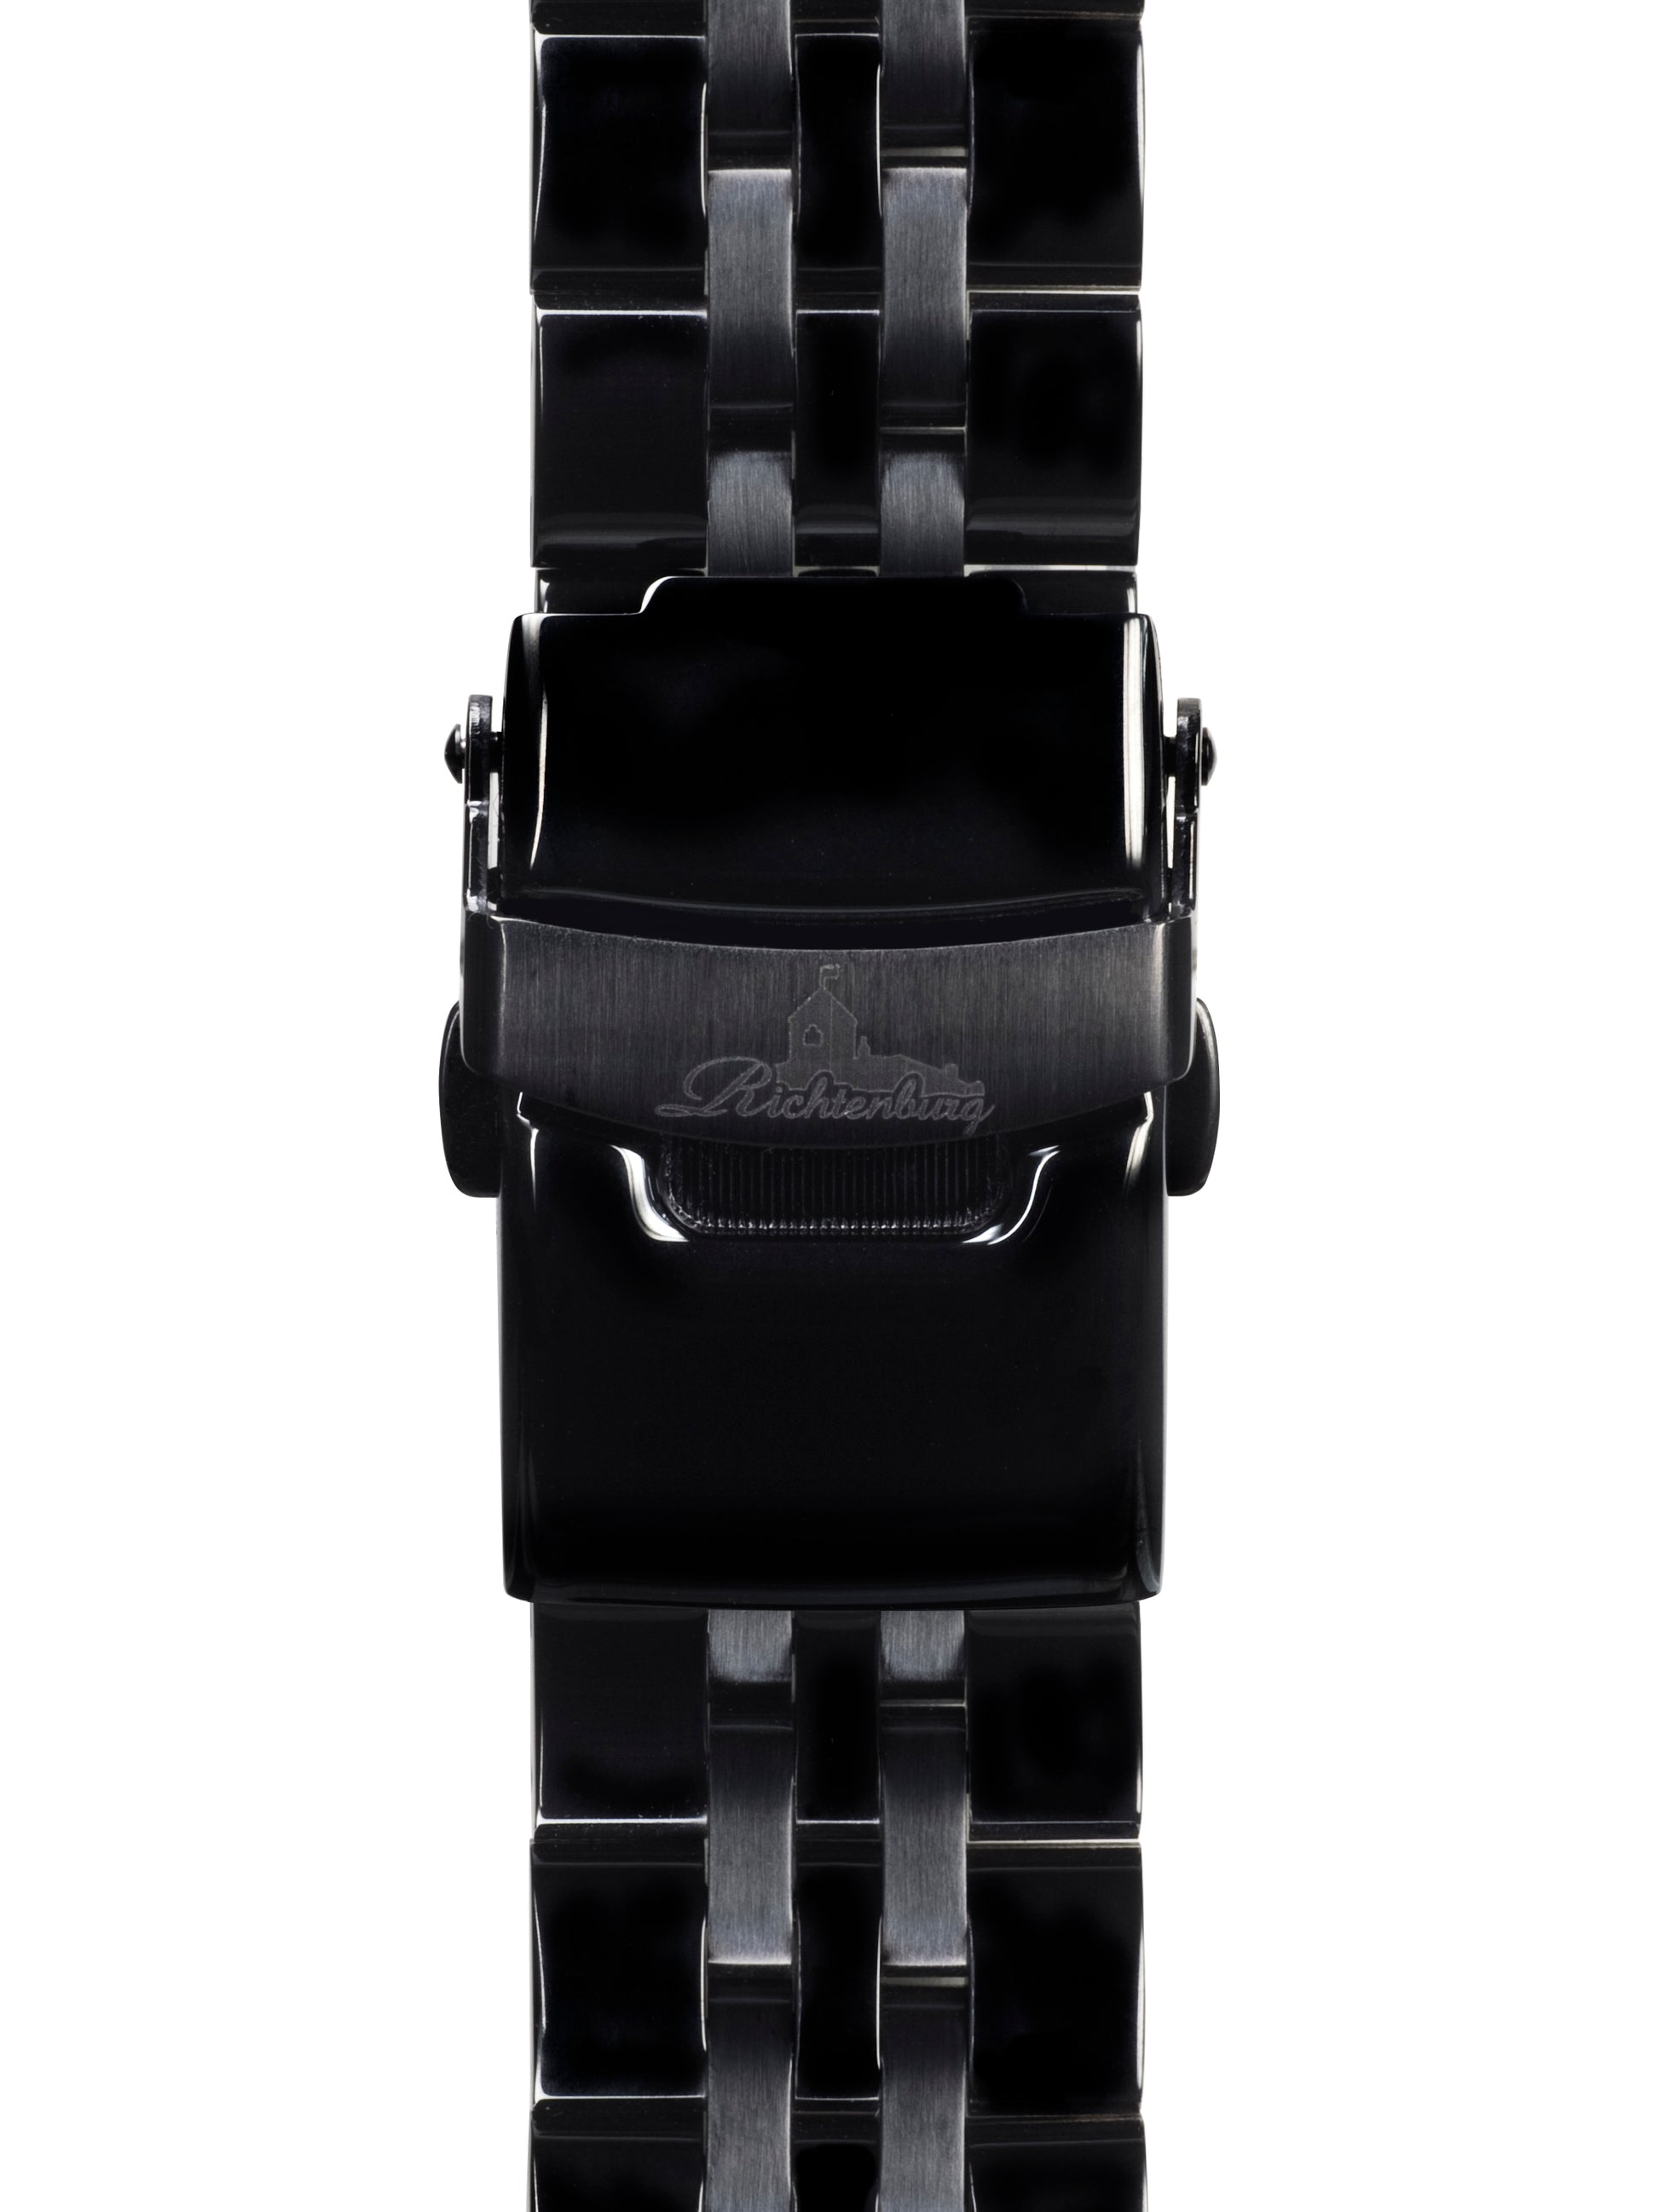 Automatic watches — Cassiopeia — Richtenburg — black IP black